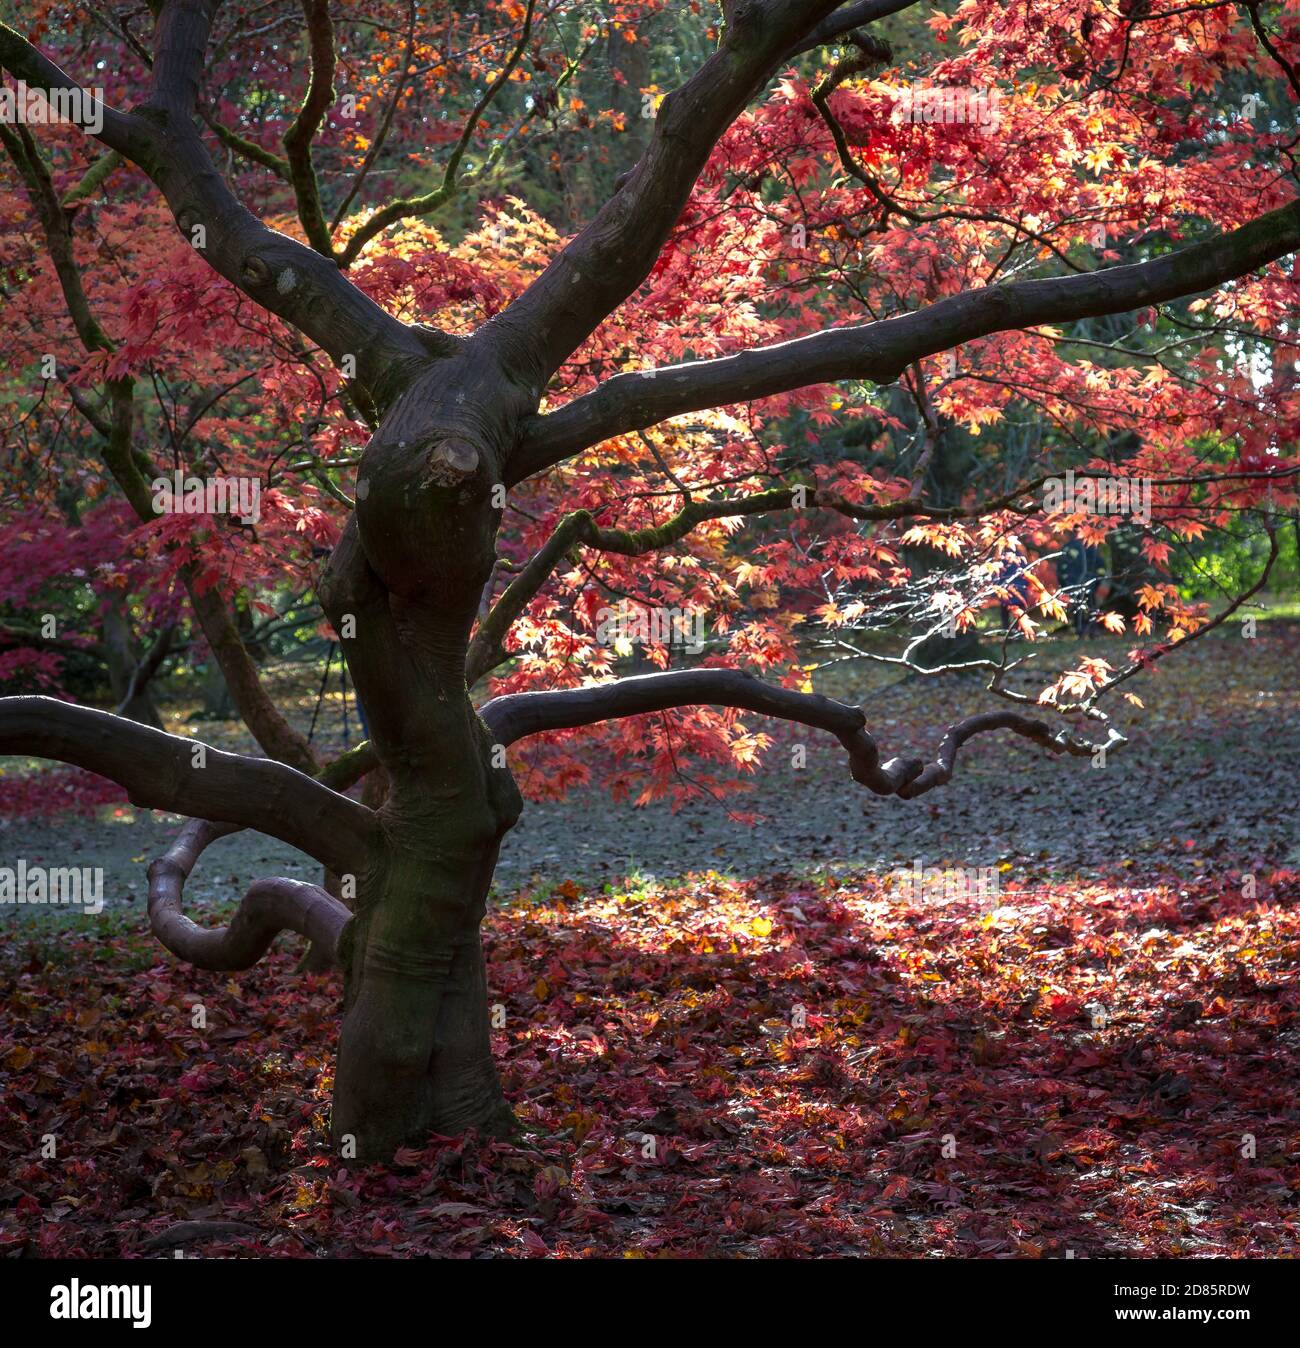 La couleur des feuilles automnales sur les arbres de l'Arboretum de Batsford. Banque D'Images